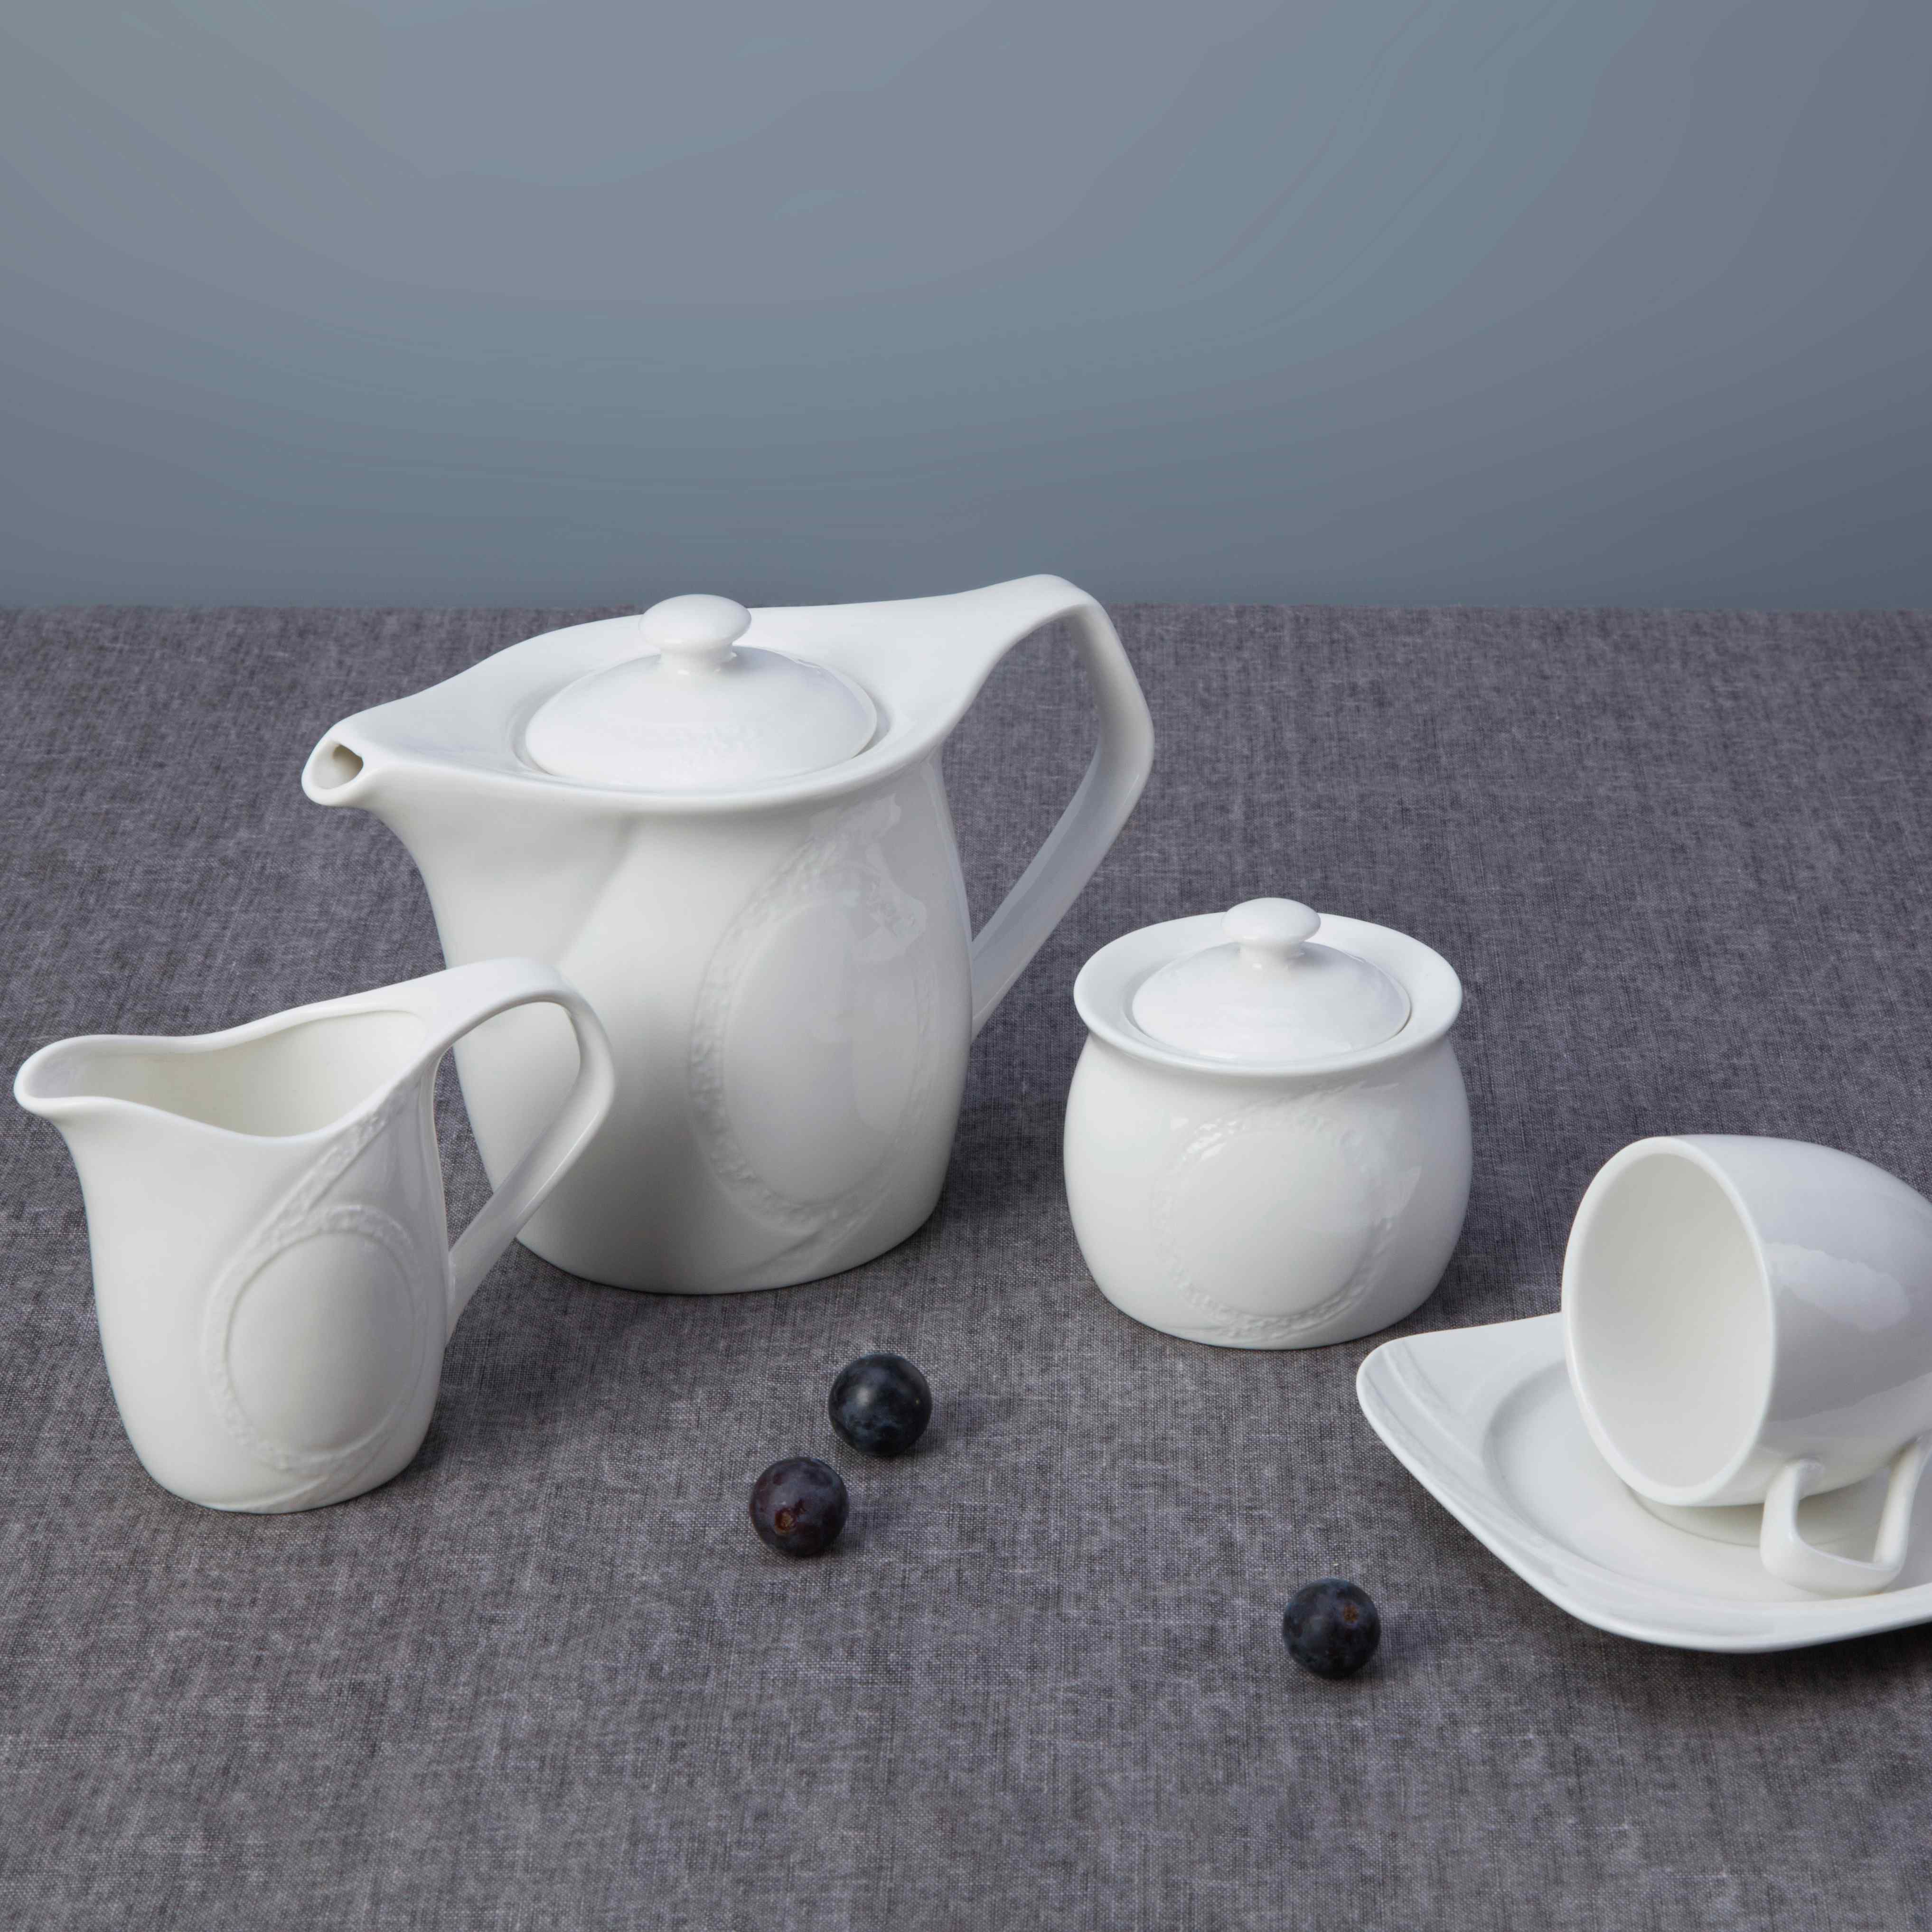 Two Eight-White Porcelain Dinner Set, 9 Piece Simply White Ceramic Dinnerware Set - Tw20-1